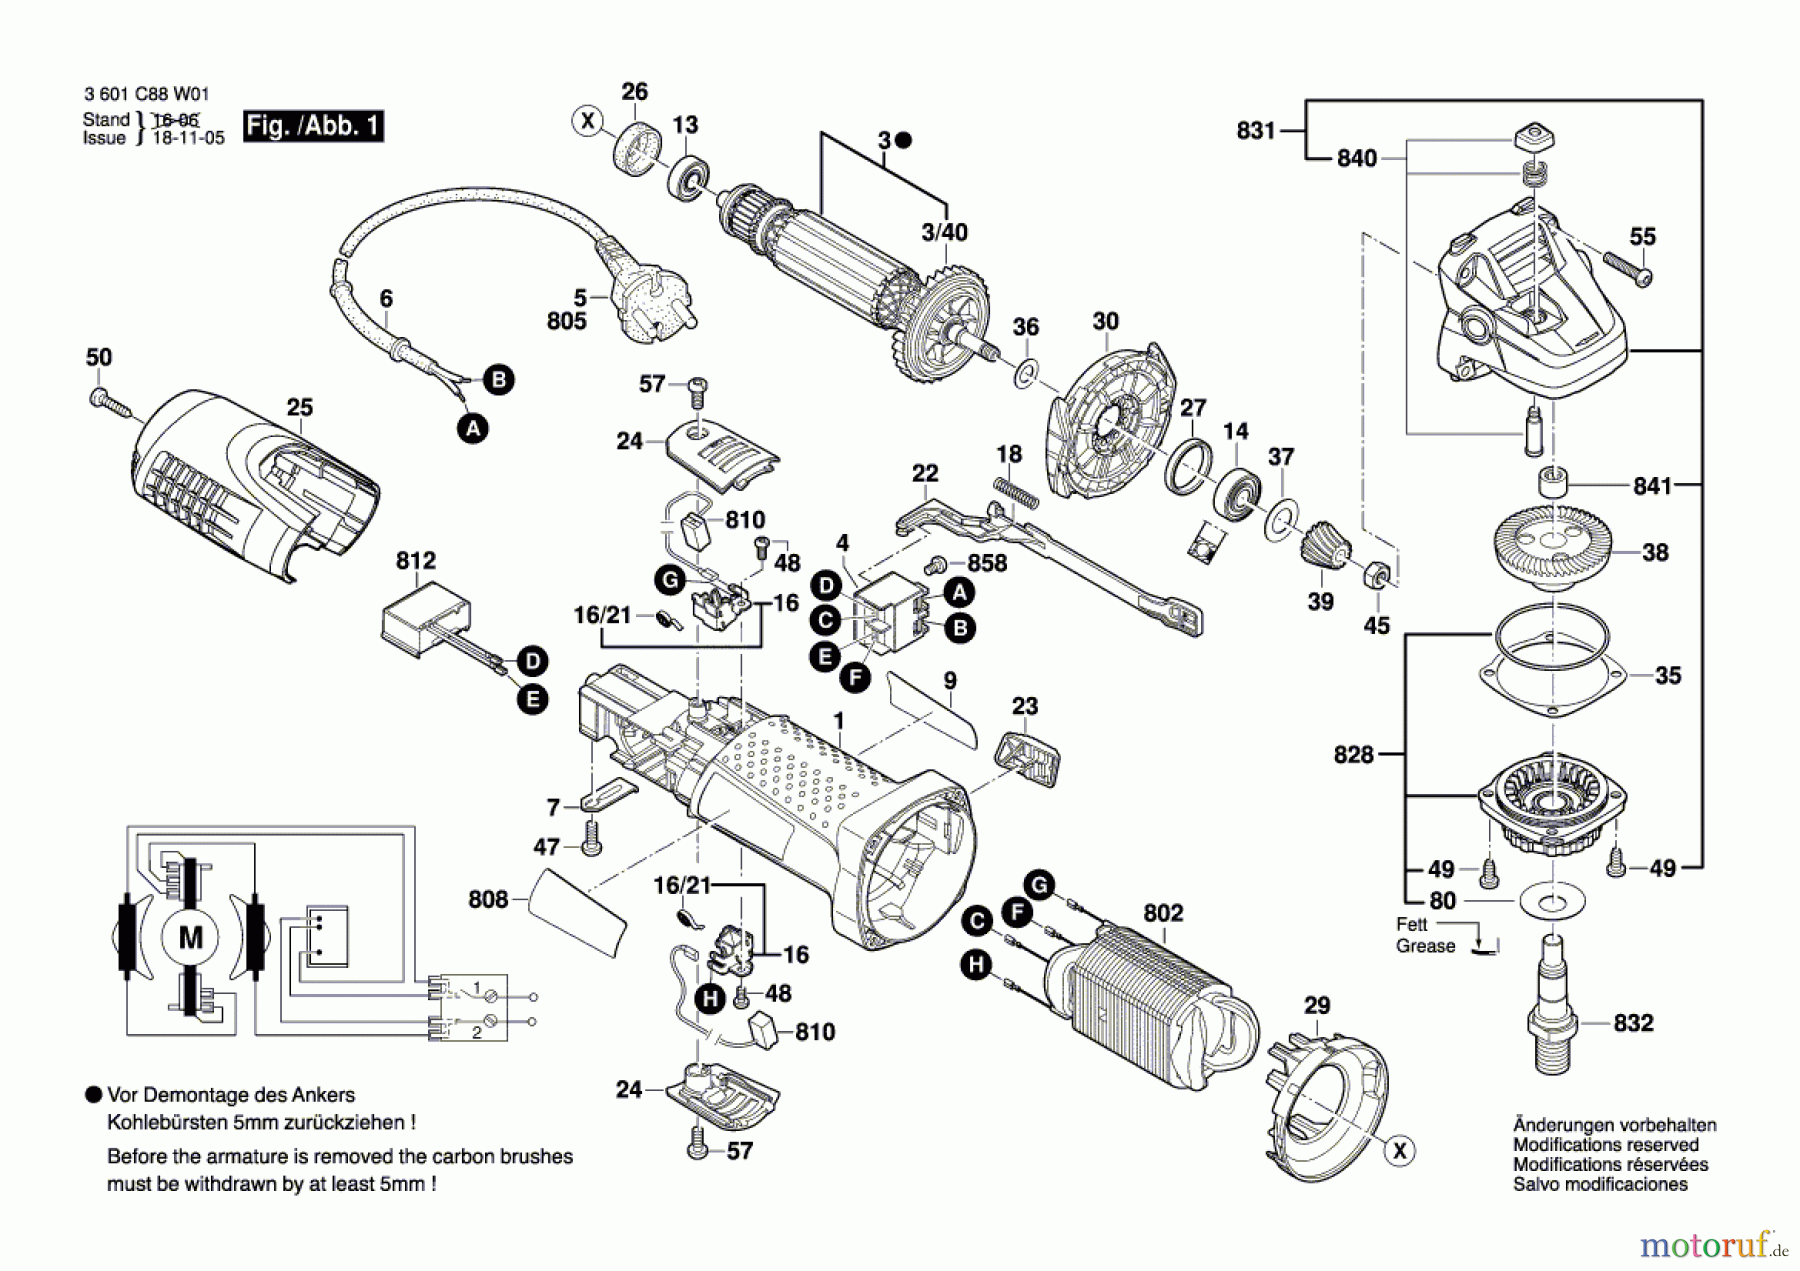  Bosch Werkzeug Winkelschleifer EWS 7-115 BASIC Seite 1